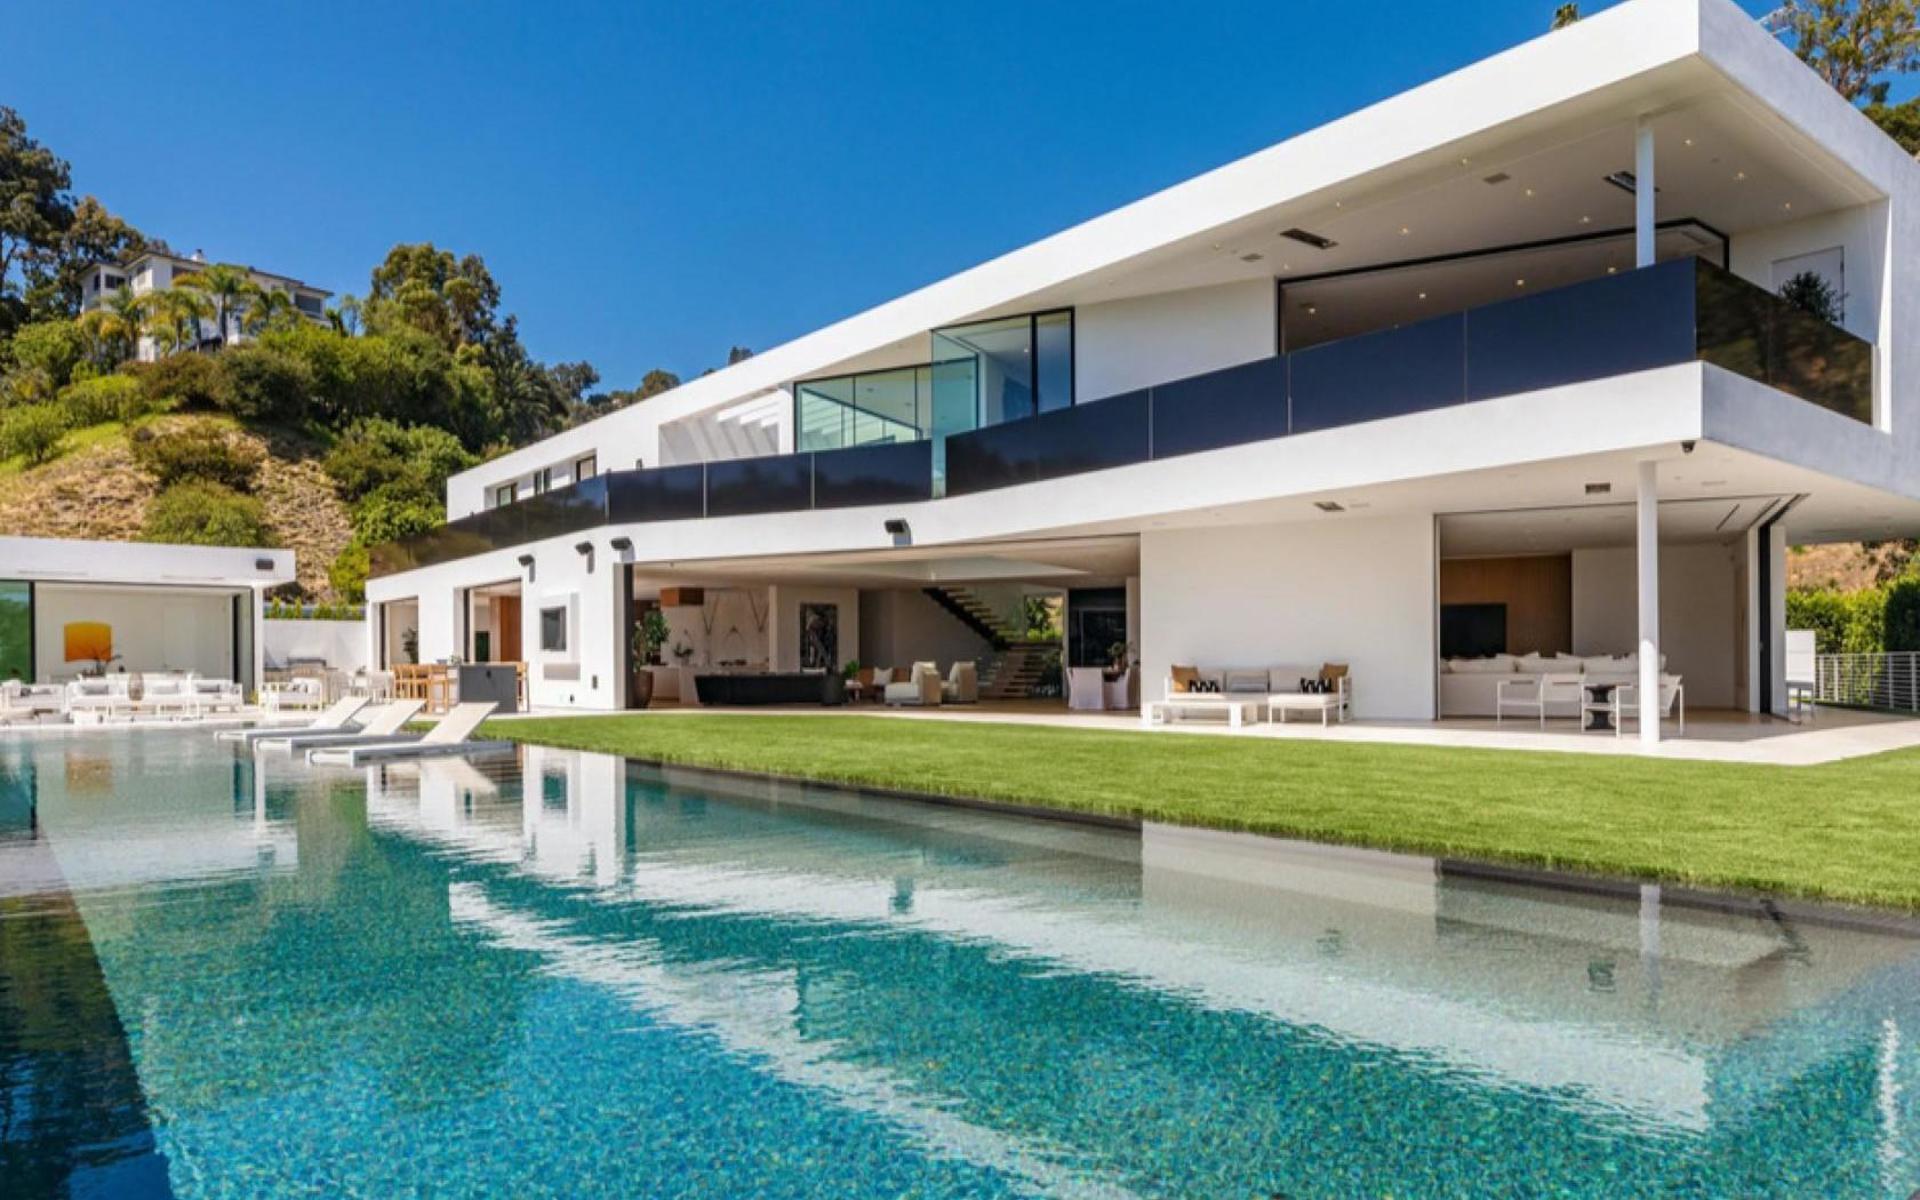 Legends och Teigen sålde nyligen ett mindre hus i Beverly Hills. Nu flyttar de till ett nytt hem.